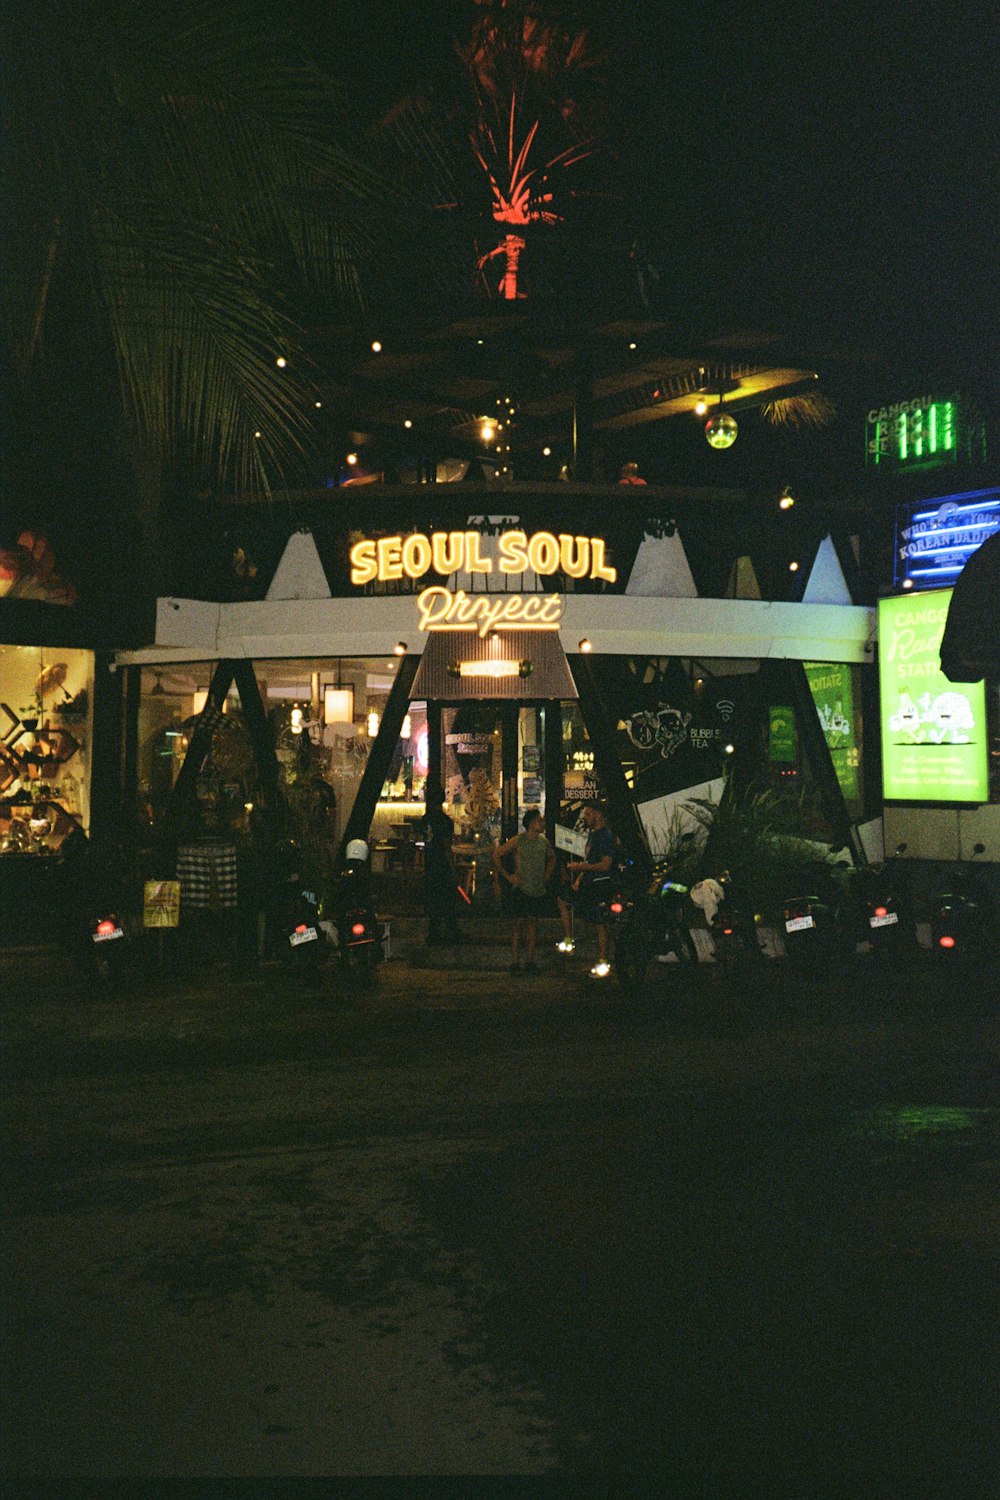 Un grupo de personas paradas afuera de una tienda por la noche